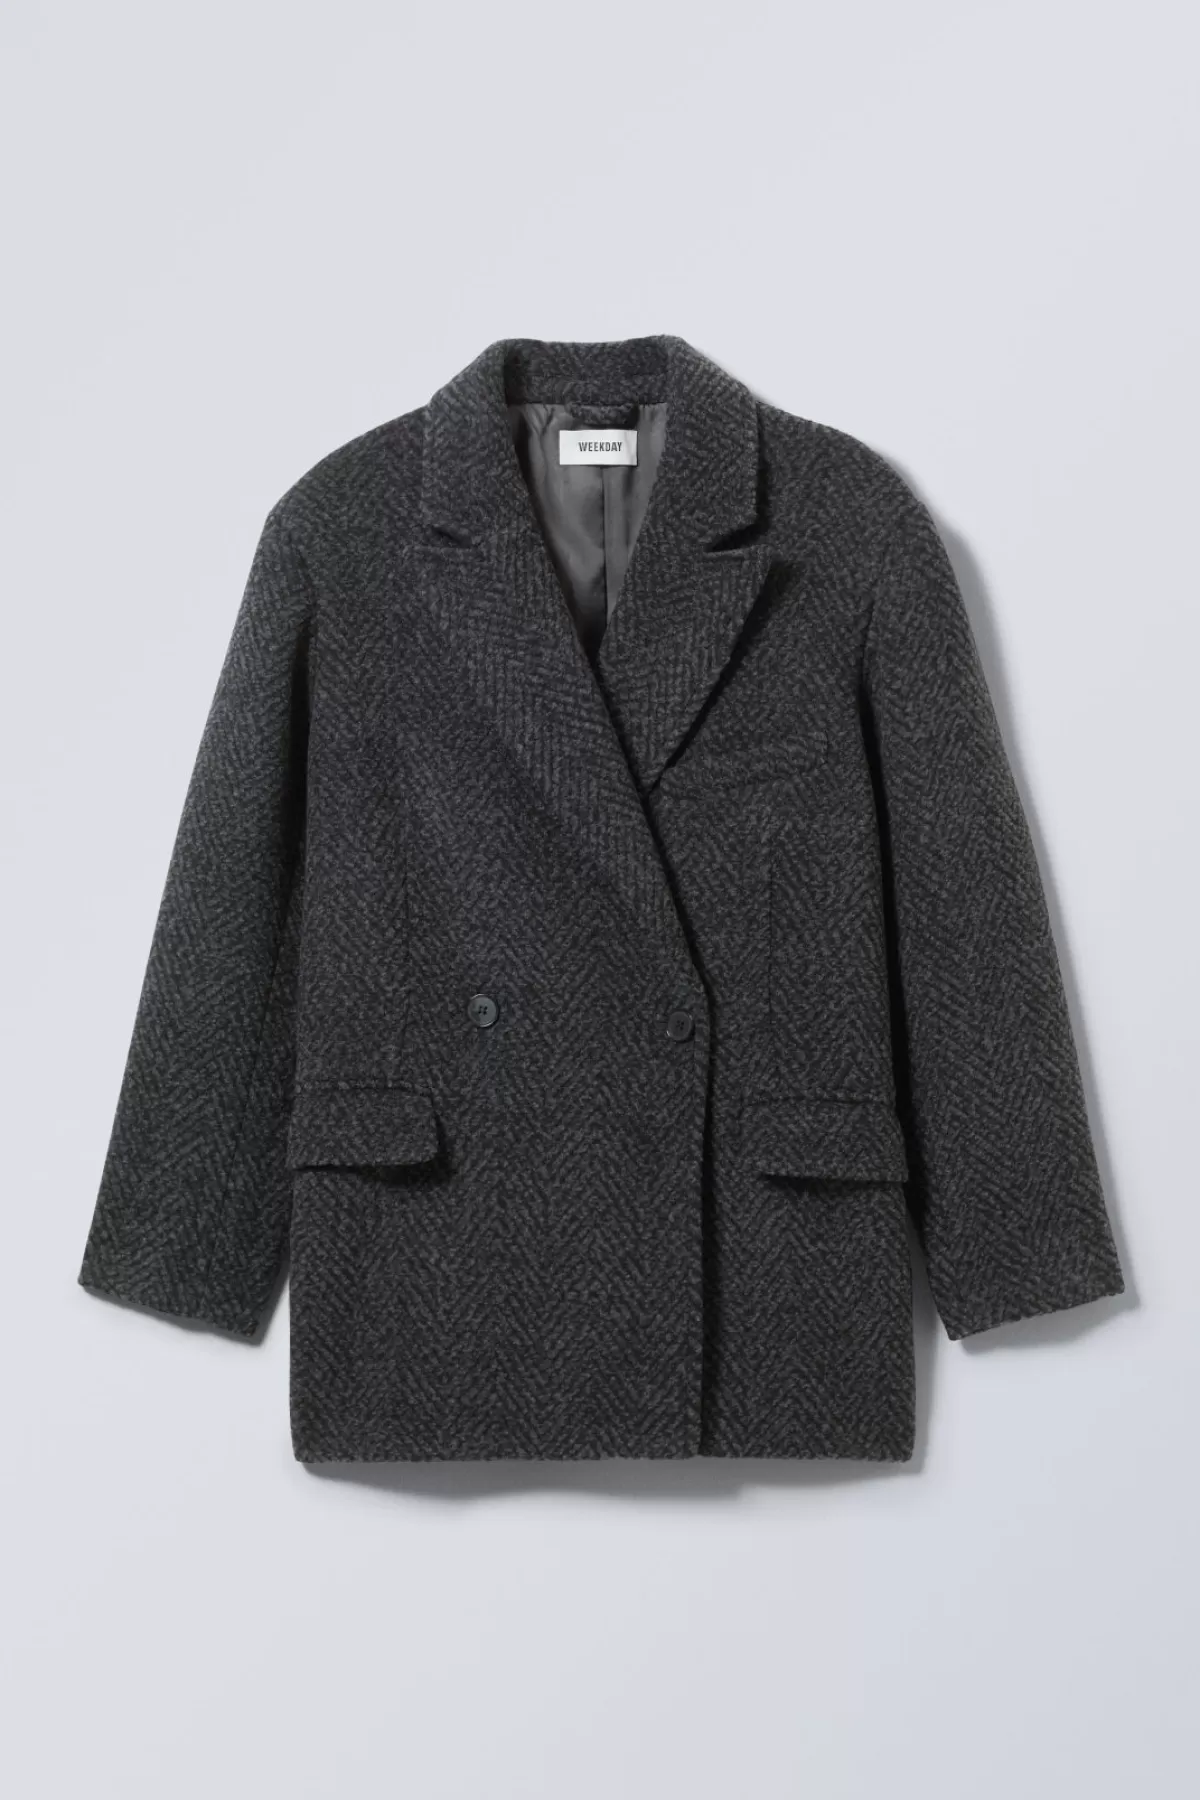 Weekday Carla Oversized Wool Blend Jacket Grey Herringbone Online